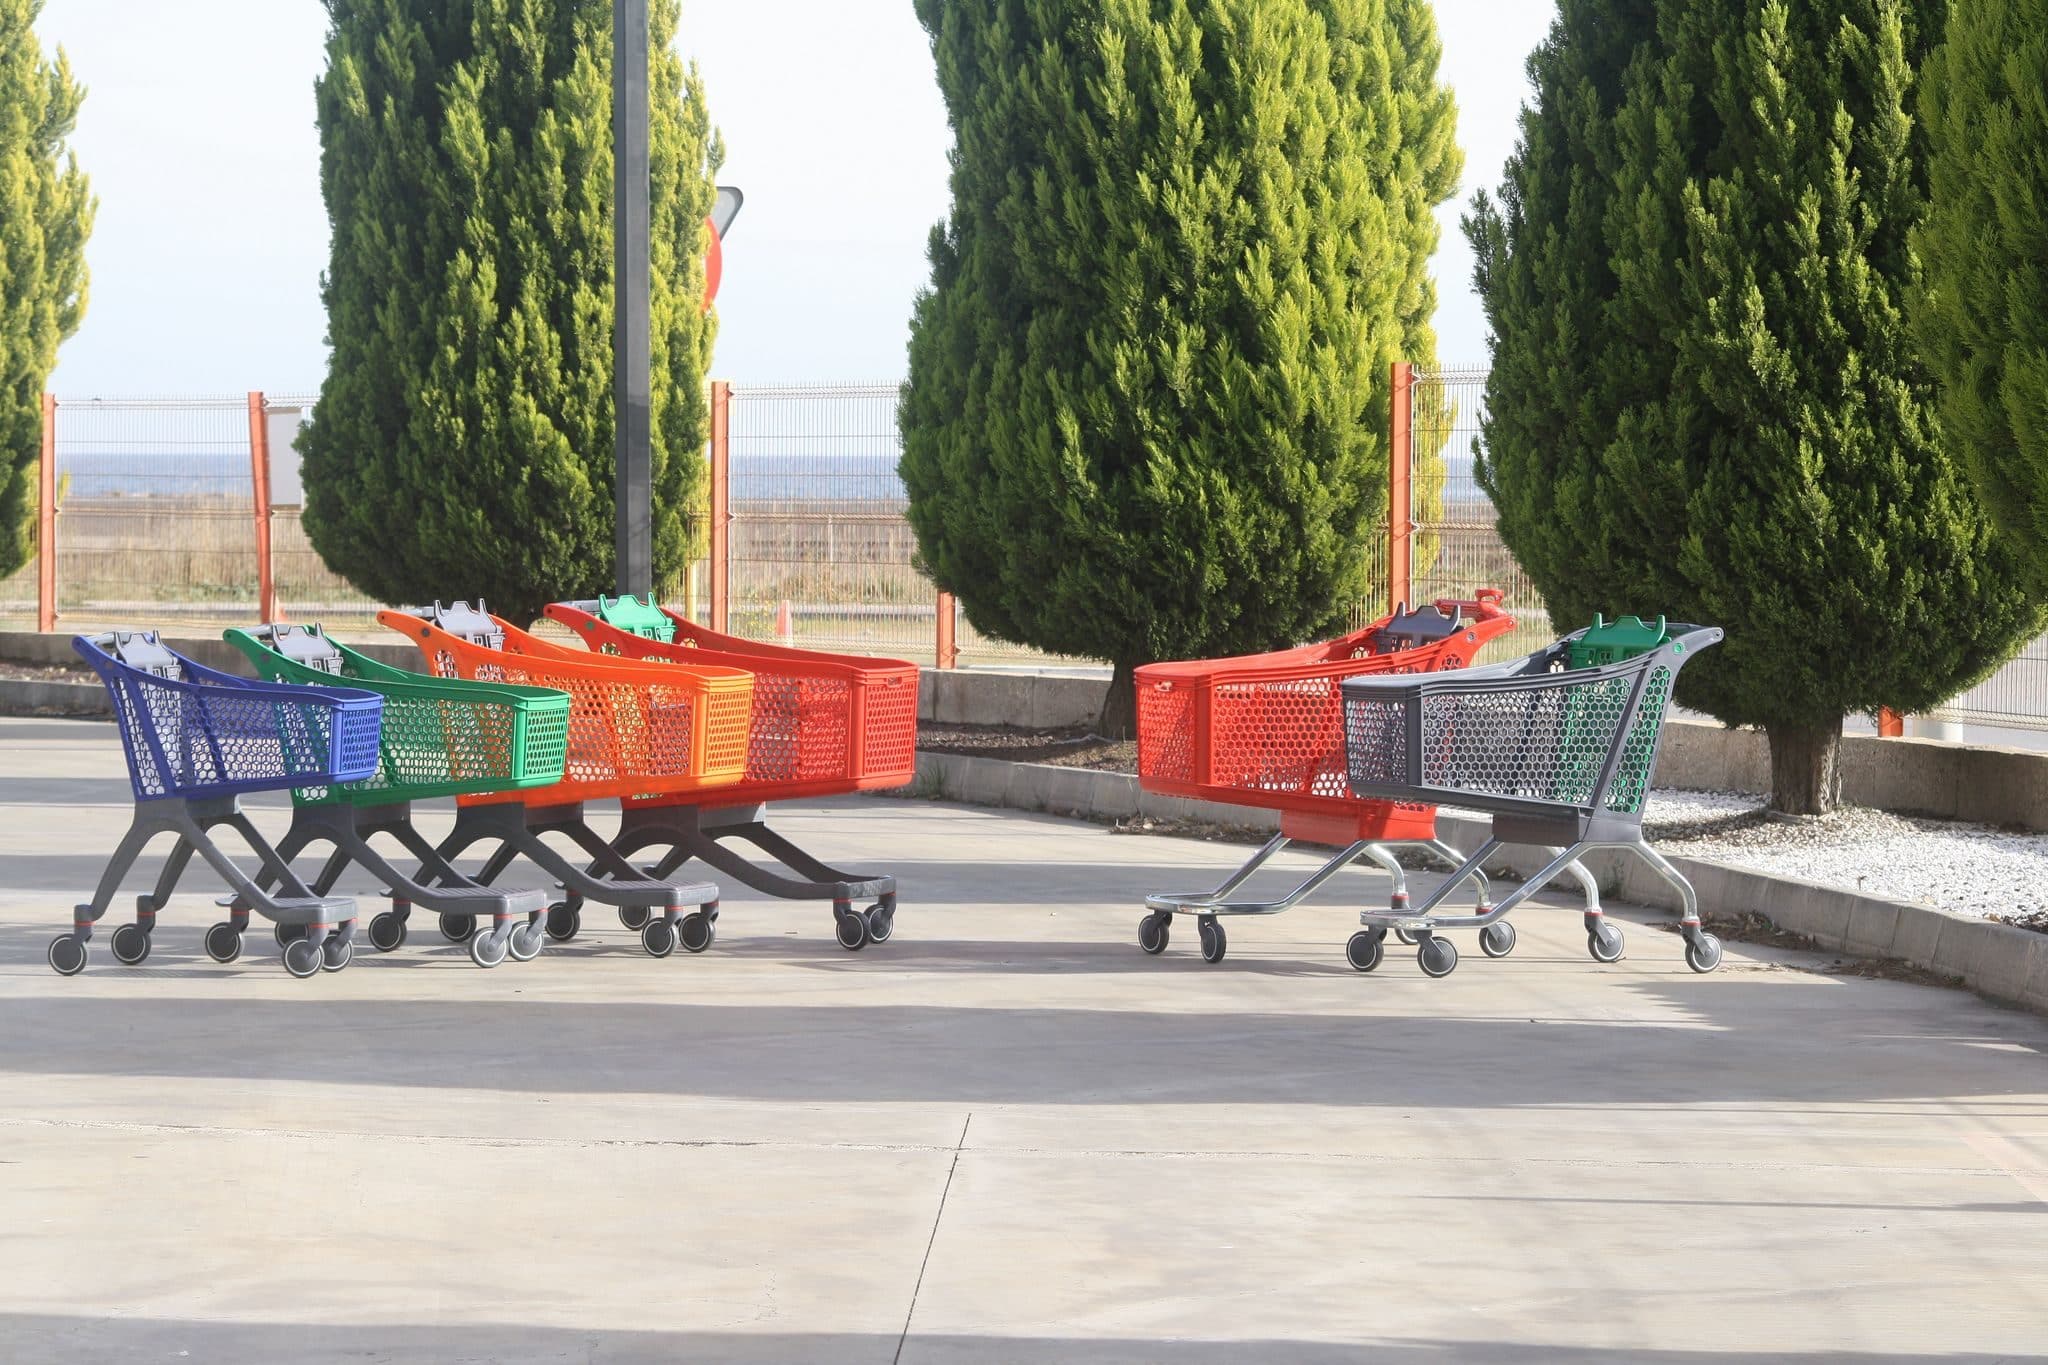 Des chariots de supermarchés (Photo Polycart / FlickR / cc)